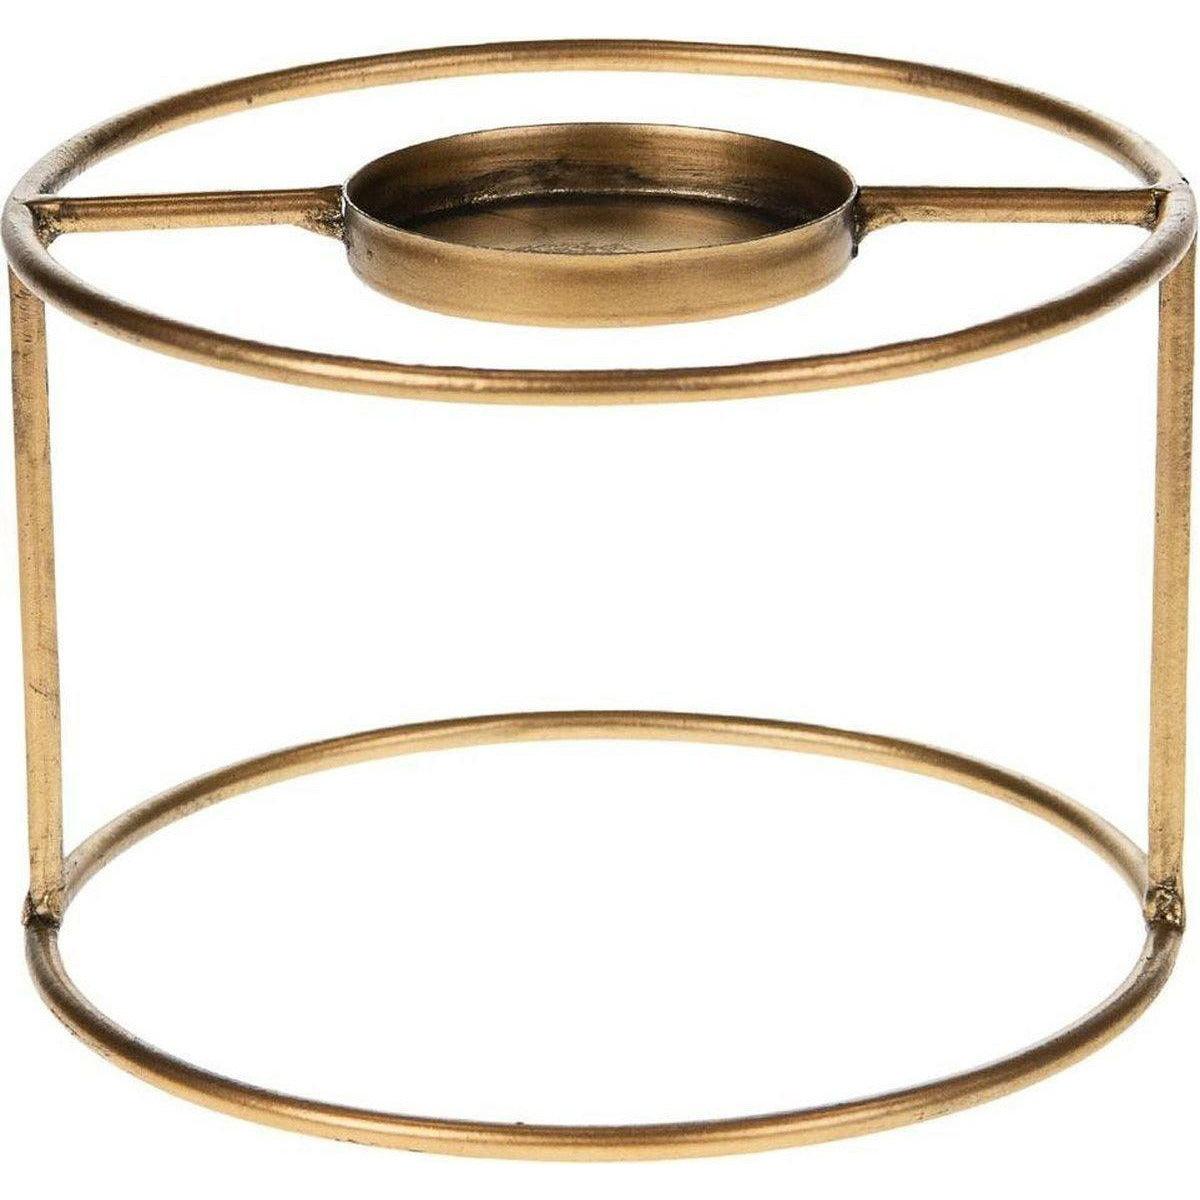 Theelichthouder - Metaal - Goud - Ø15x10cm - Antique gold look - Marli Goods